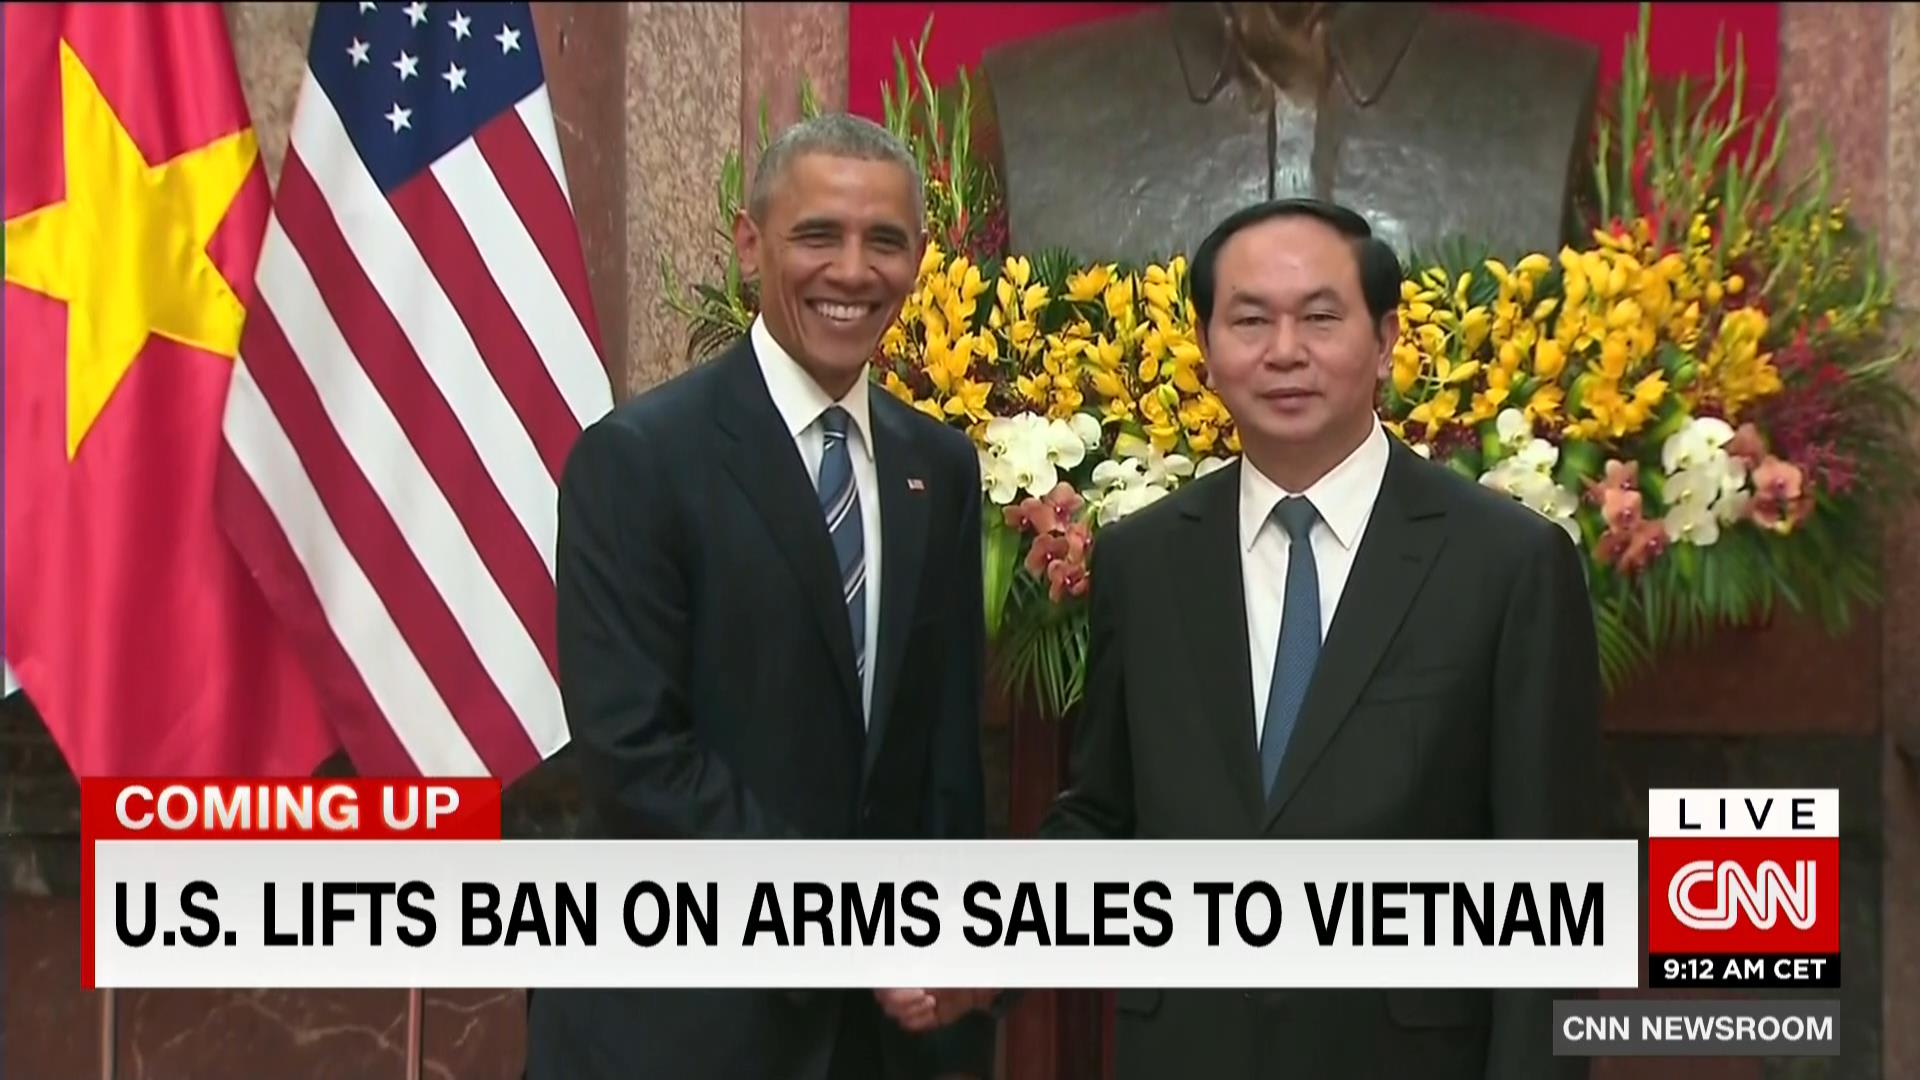 أمريكا ترفع الحظر عن مبيعات الأسلحة الفتاكة إلى فيتنام رغم "سجلها الكئيب بحقوق الإنسان".. بعد تاريخ حافل بالمجازر والحروب